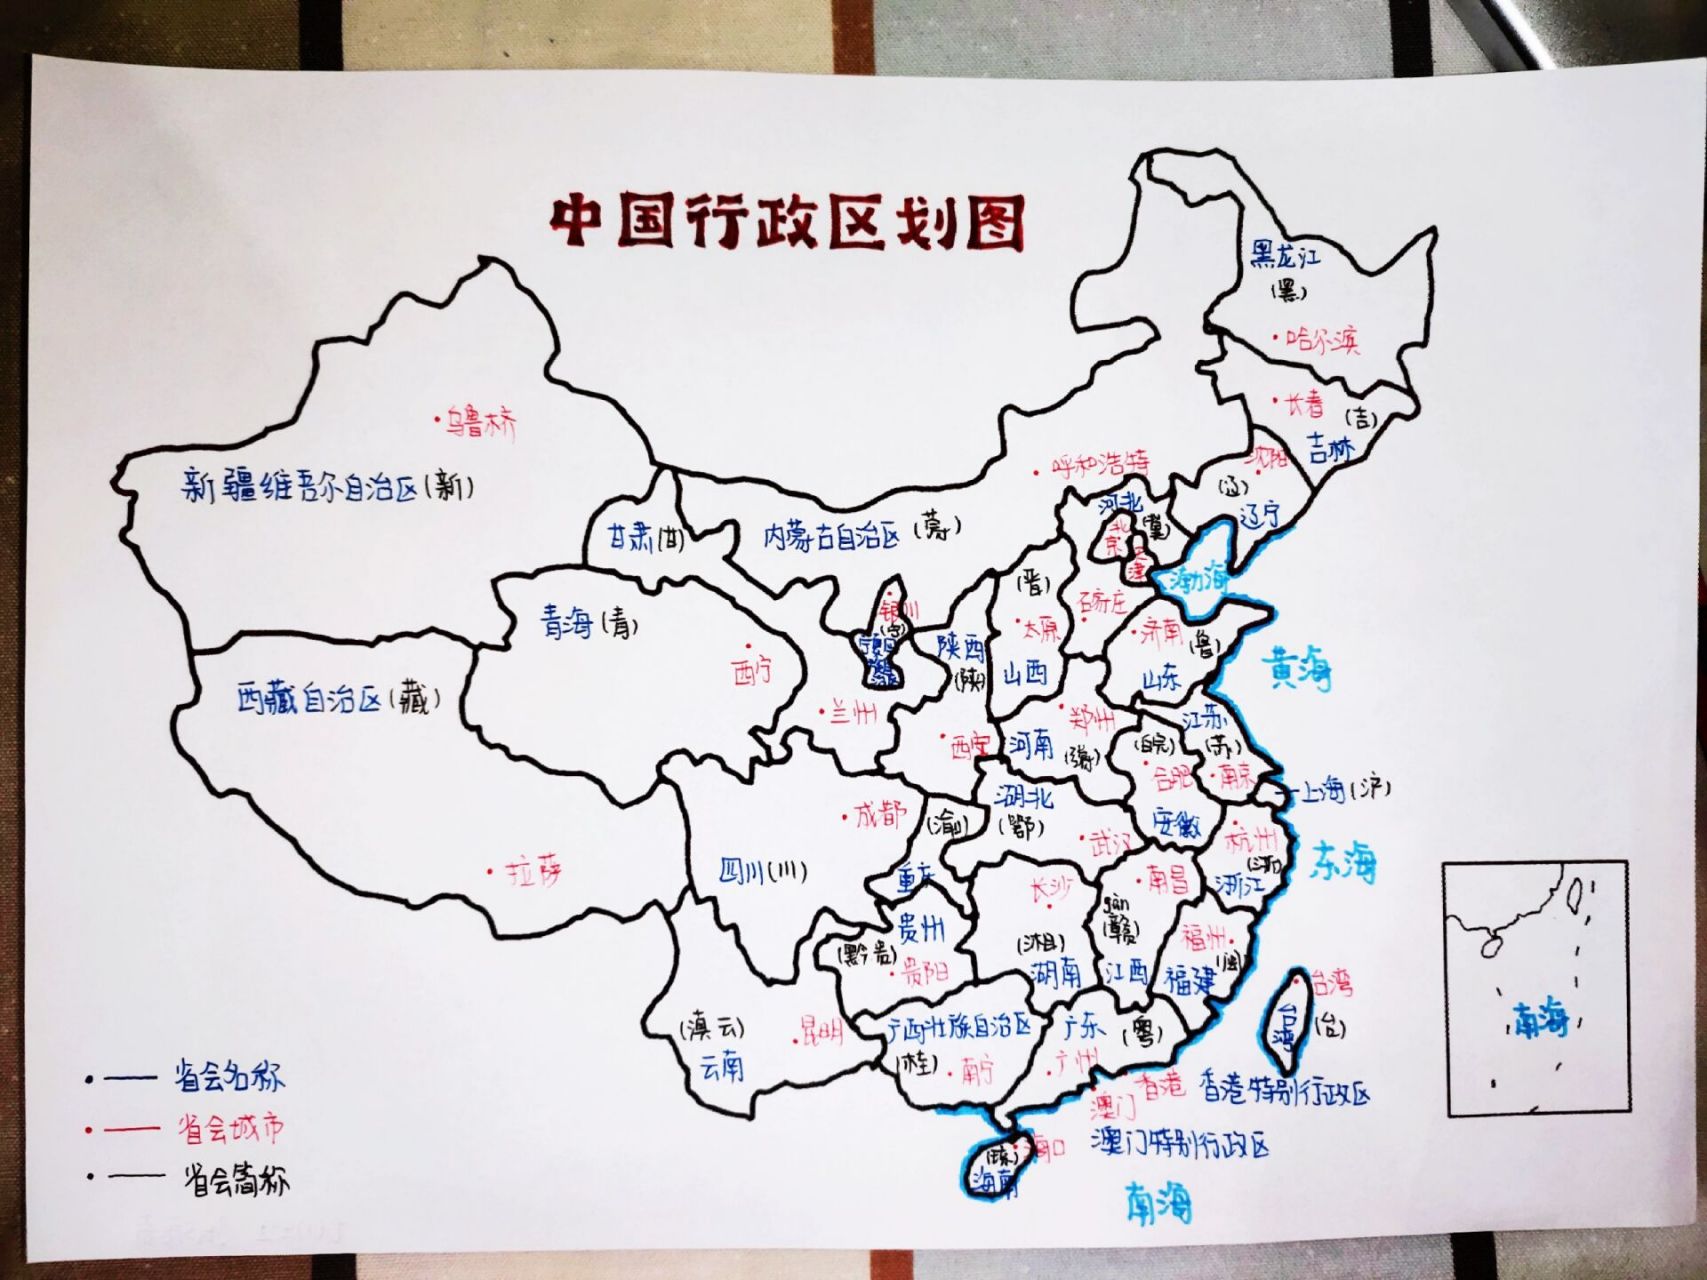 中国地理 简笔画图片